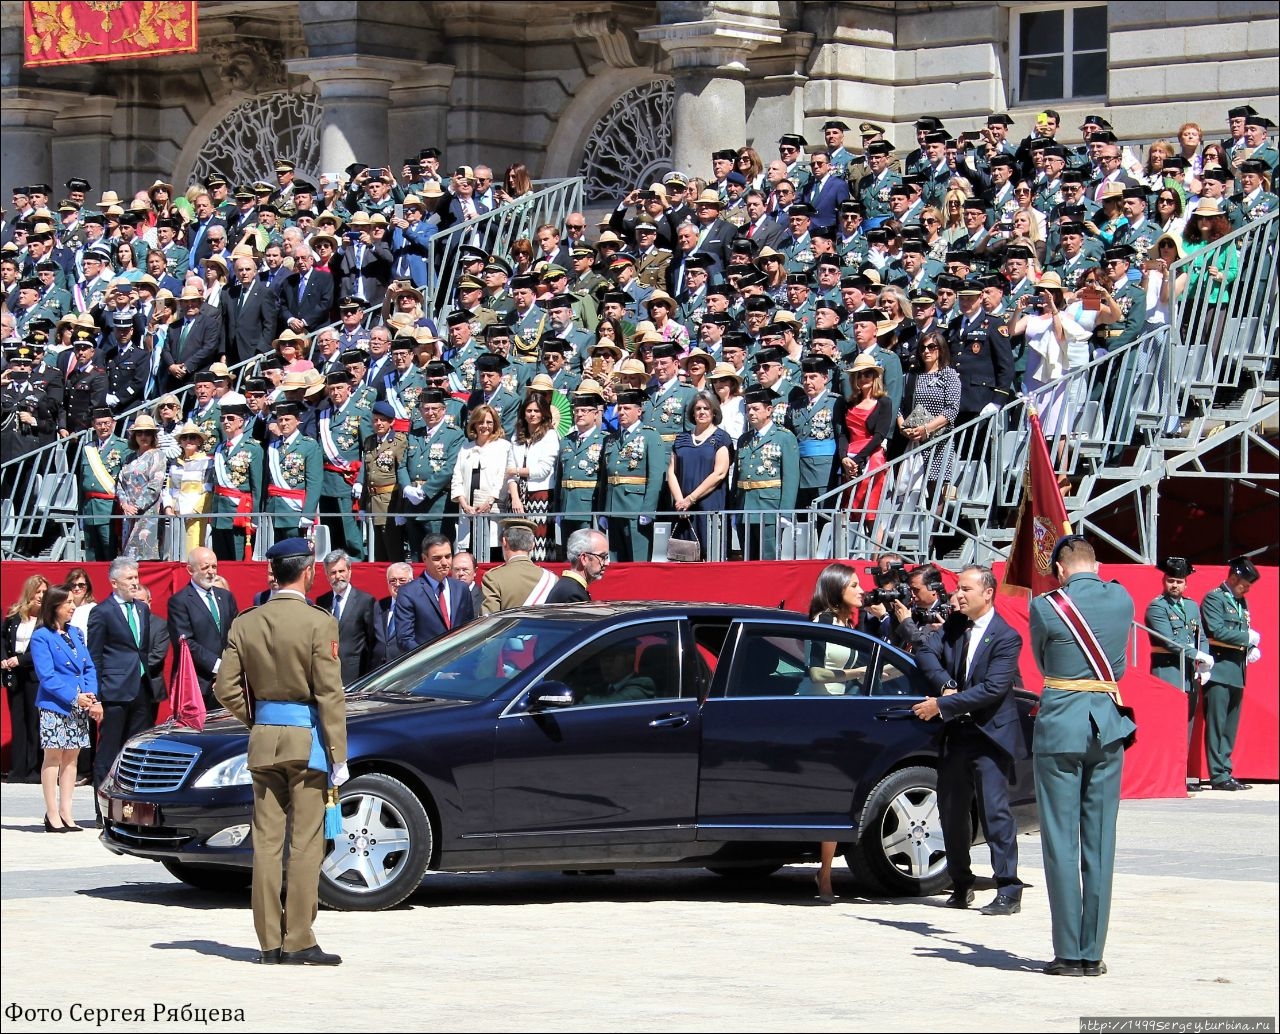 Как мы не попали во дворец, но увидели настоящего короля Мадрид, Испания